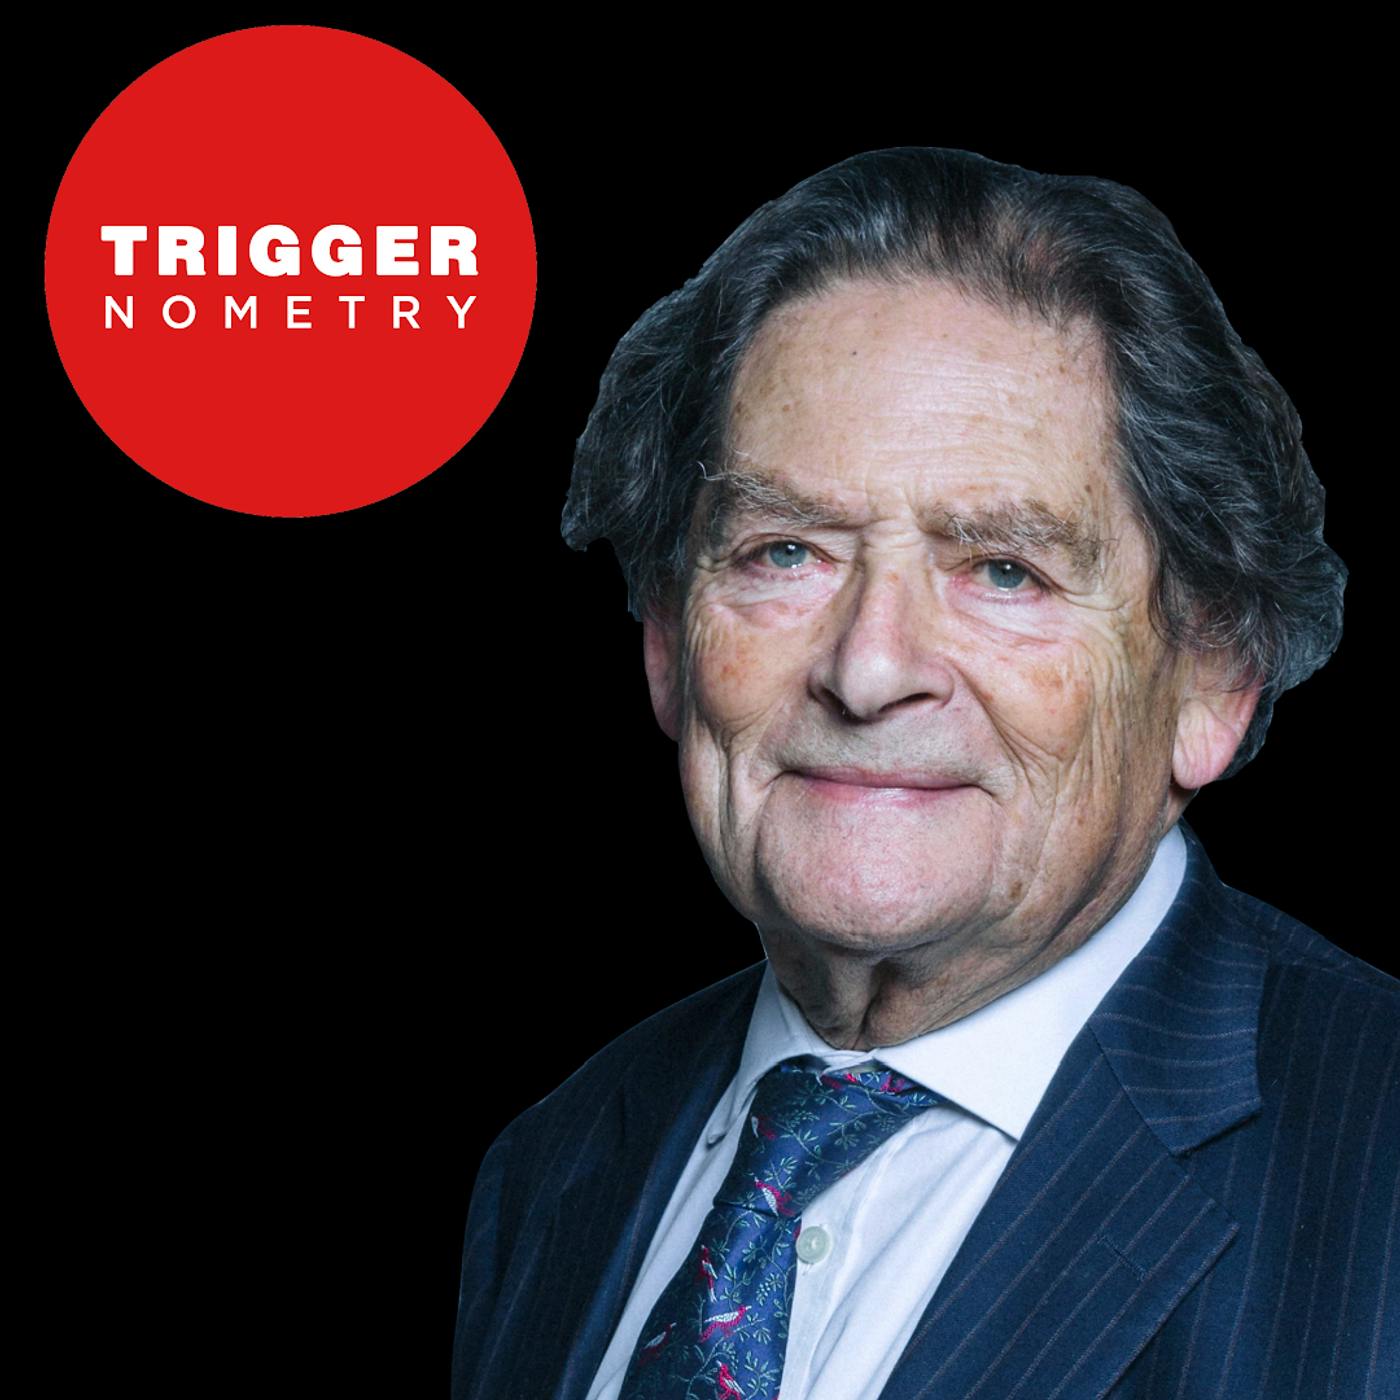 Lord Nigel Lawson: 